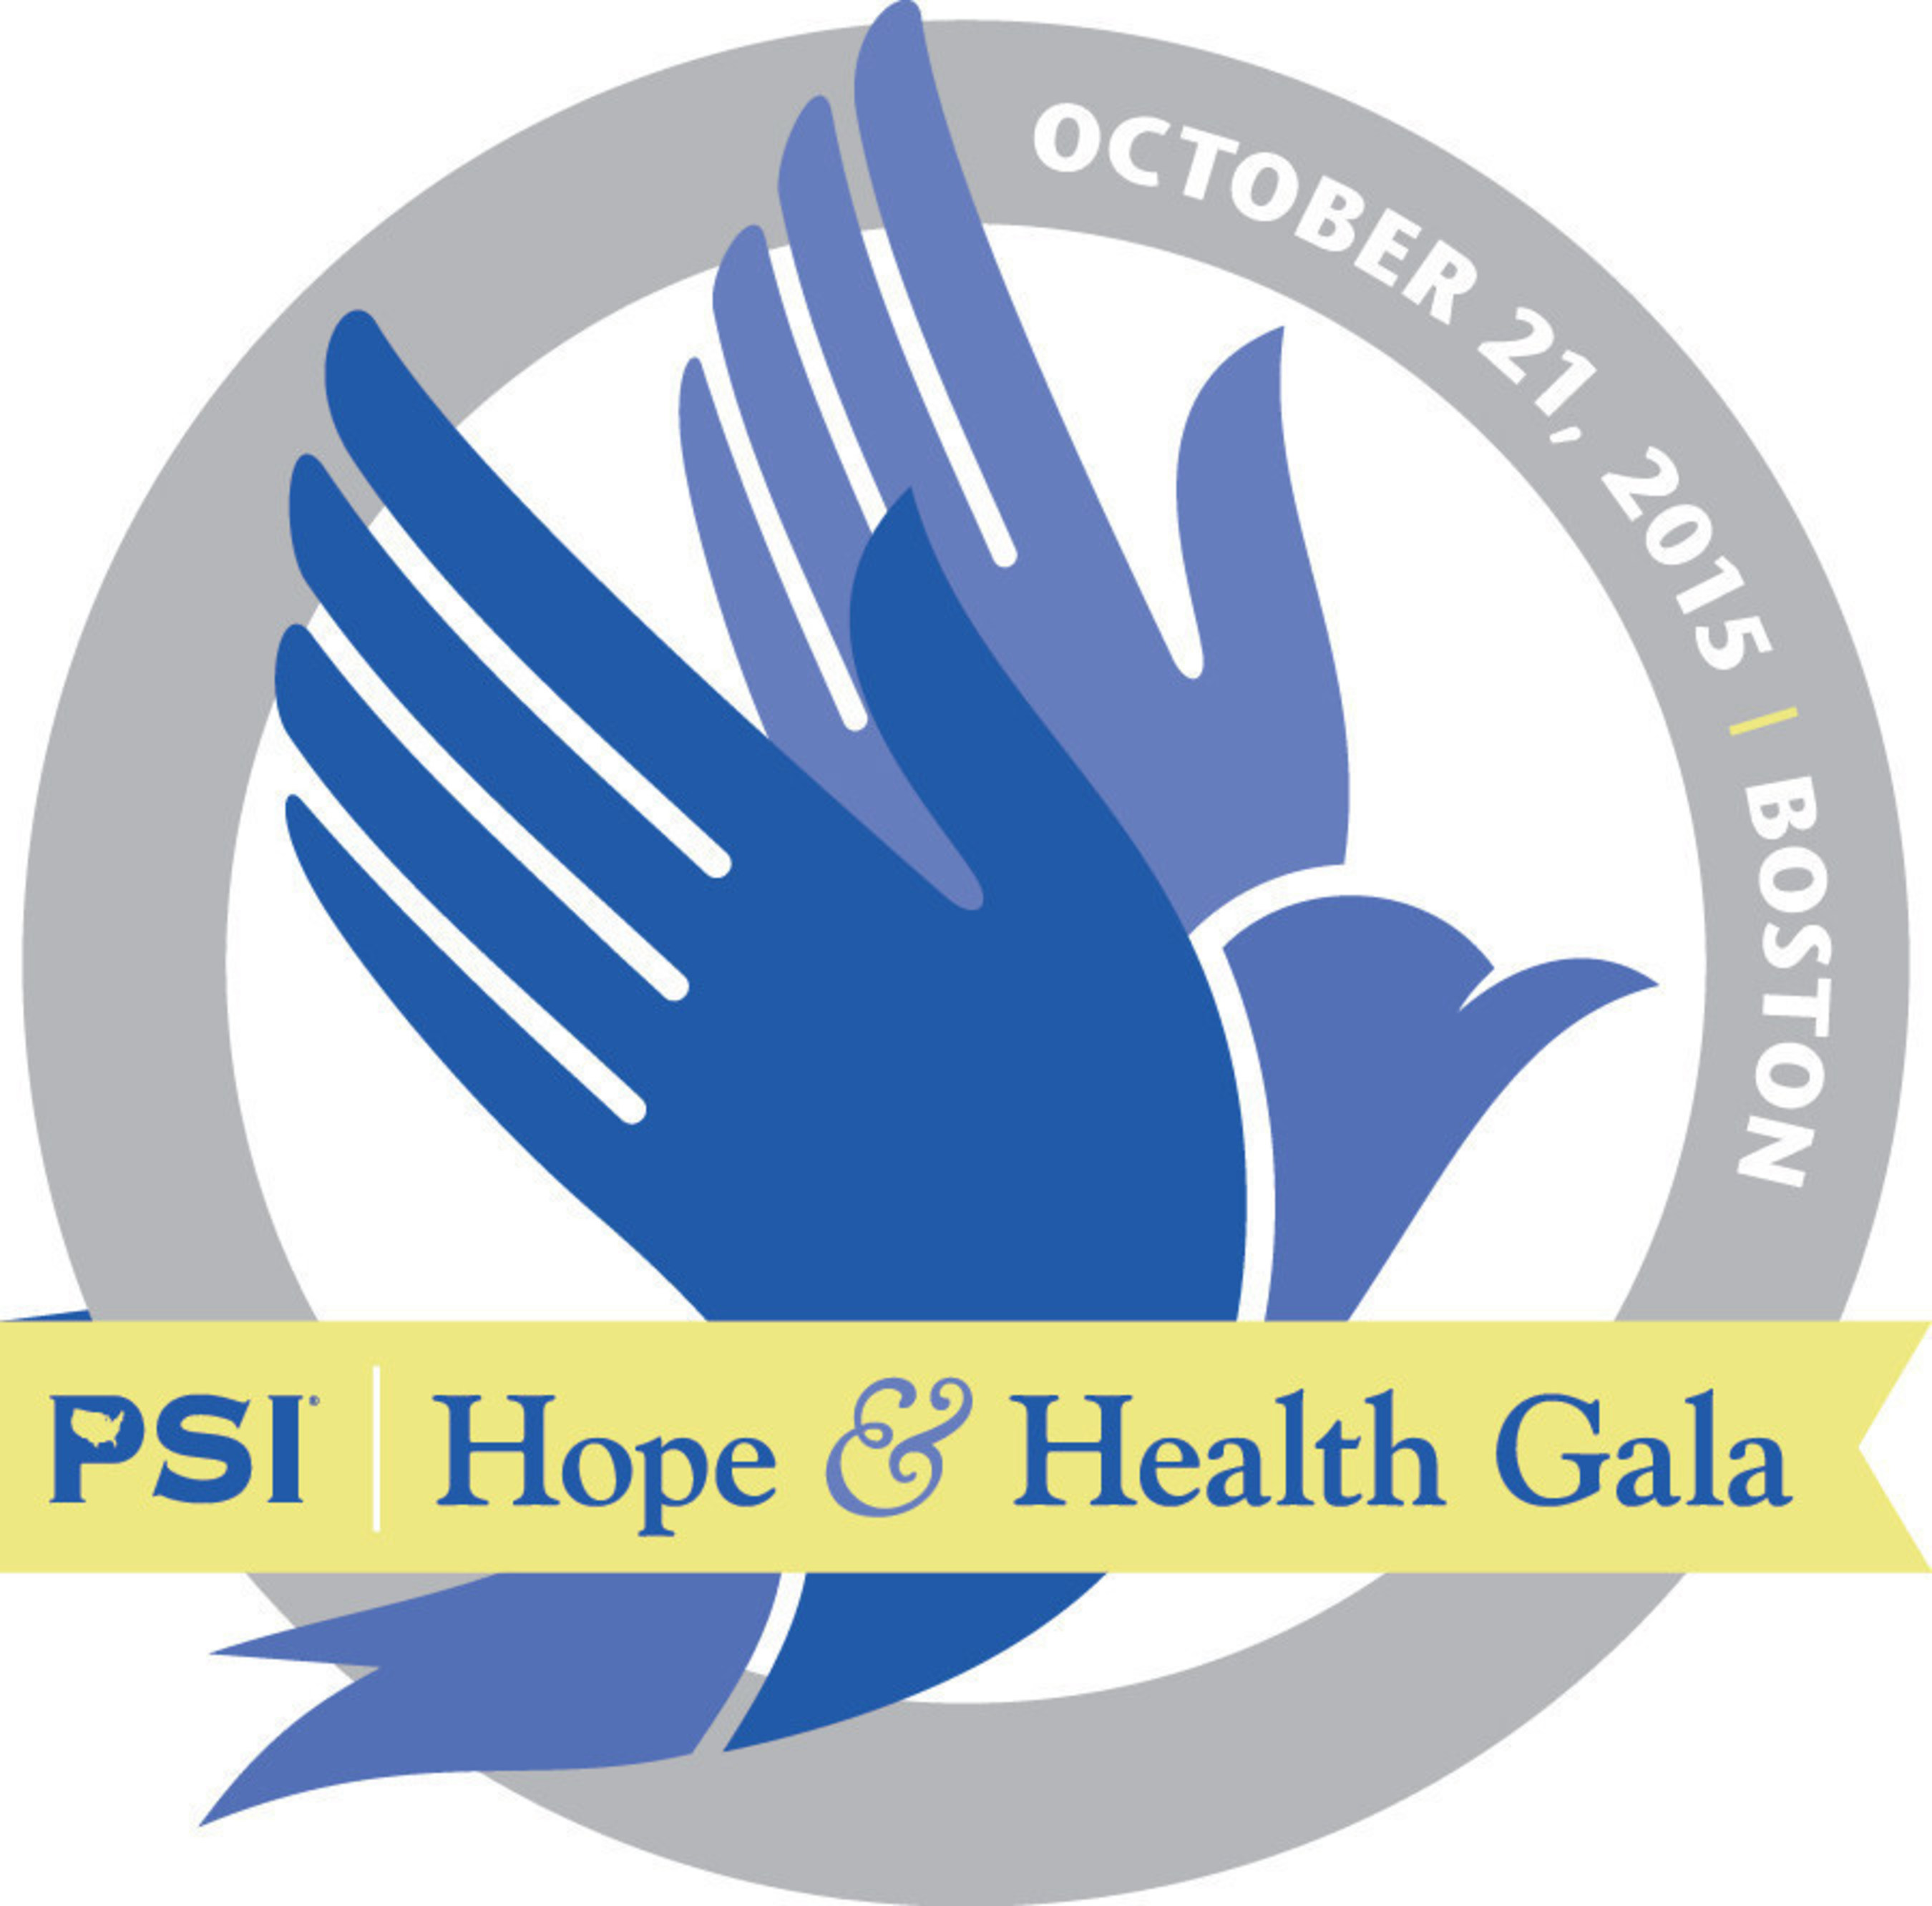 PSI Hope & Health Gala